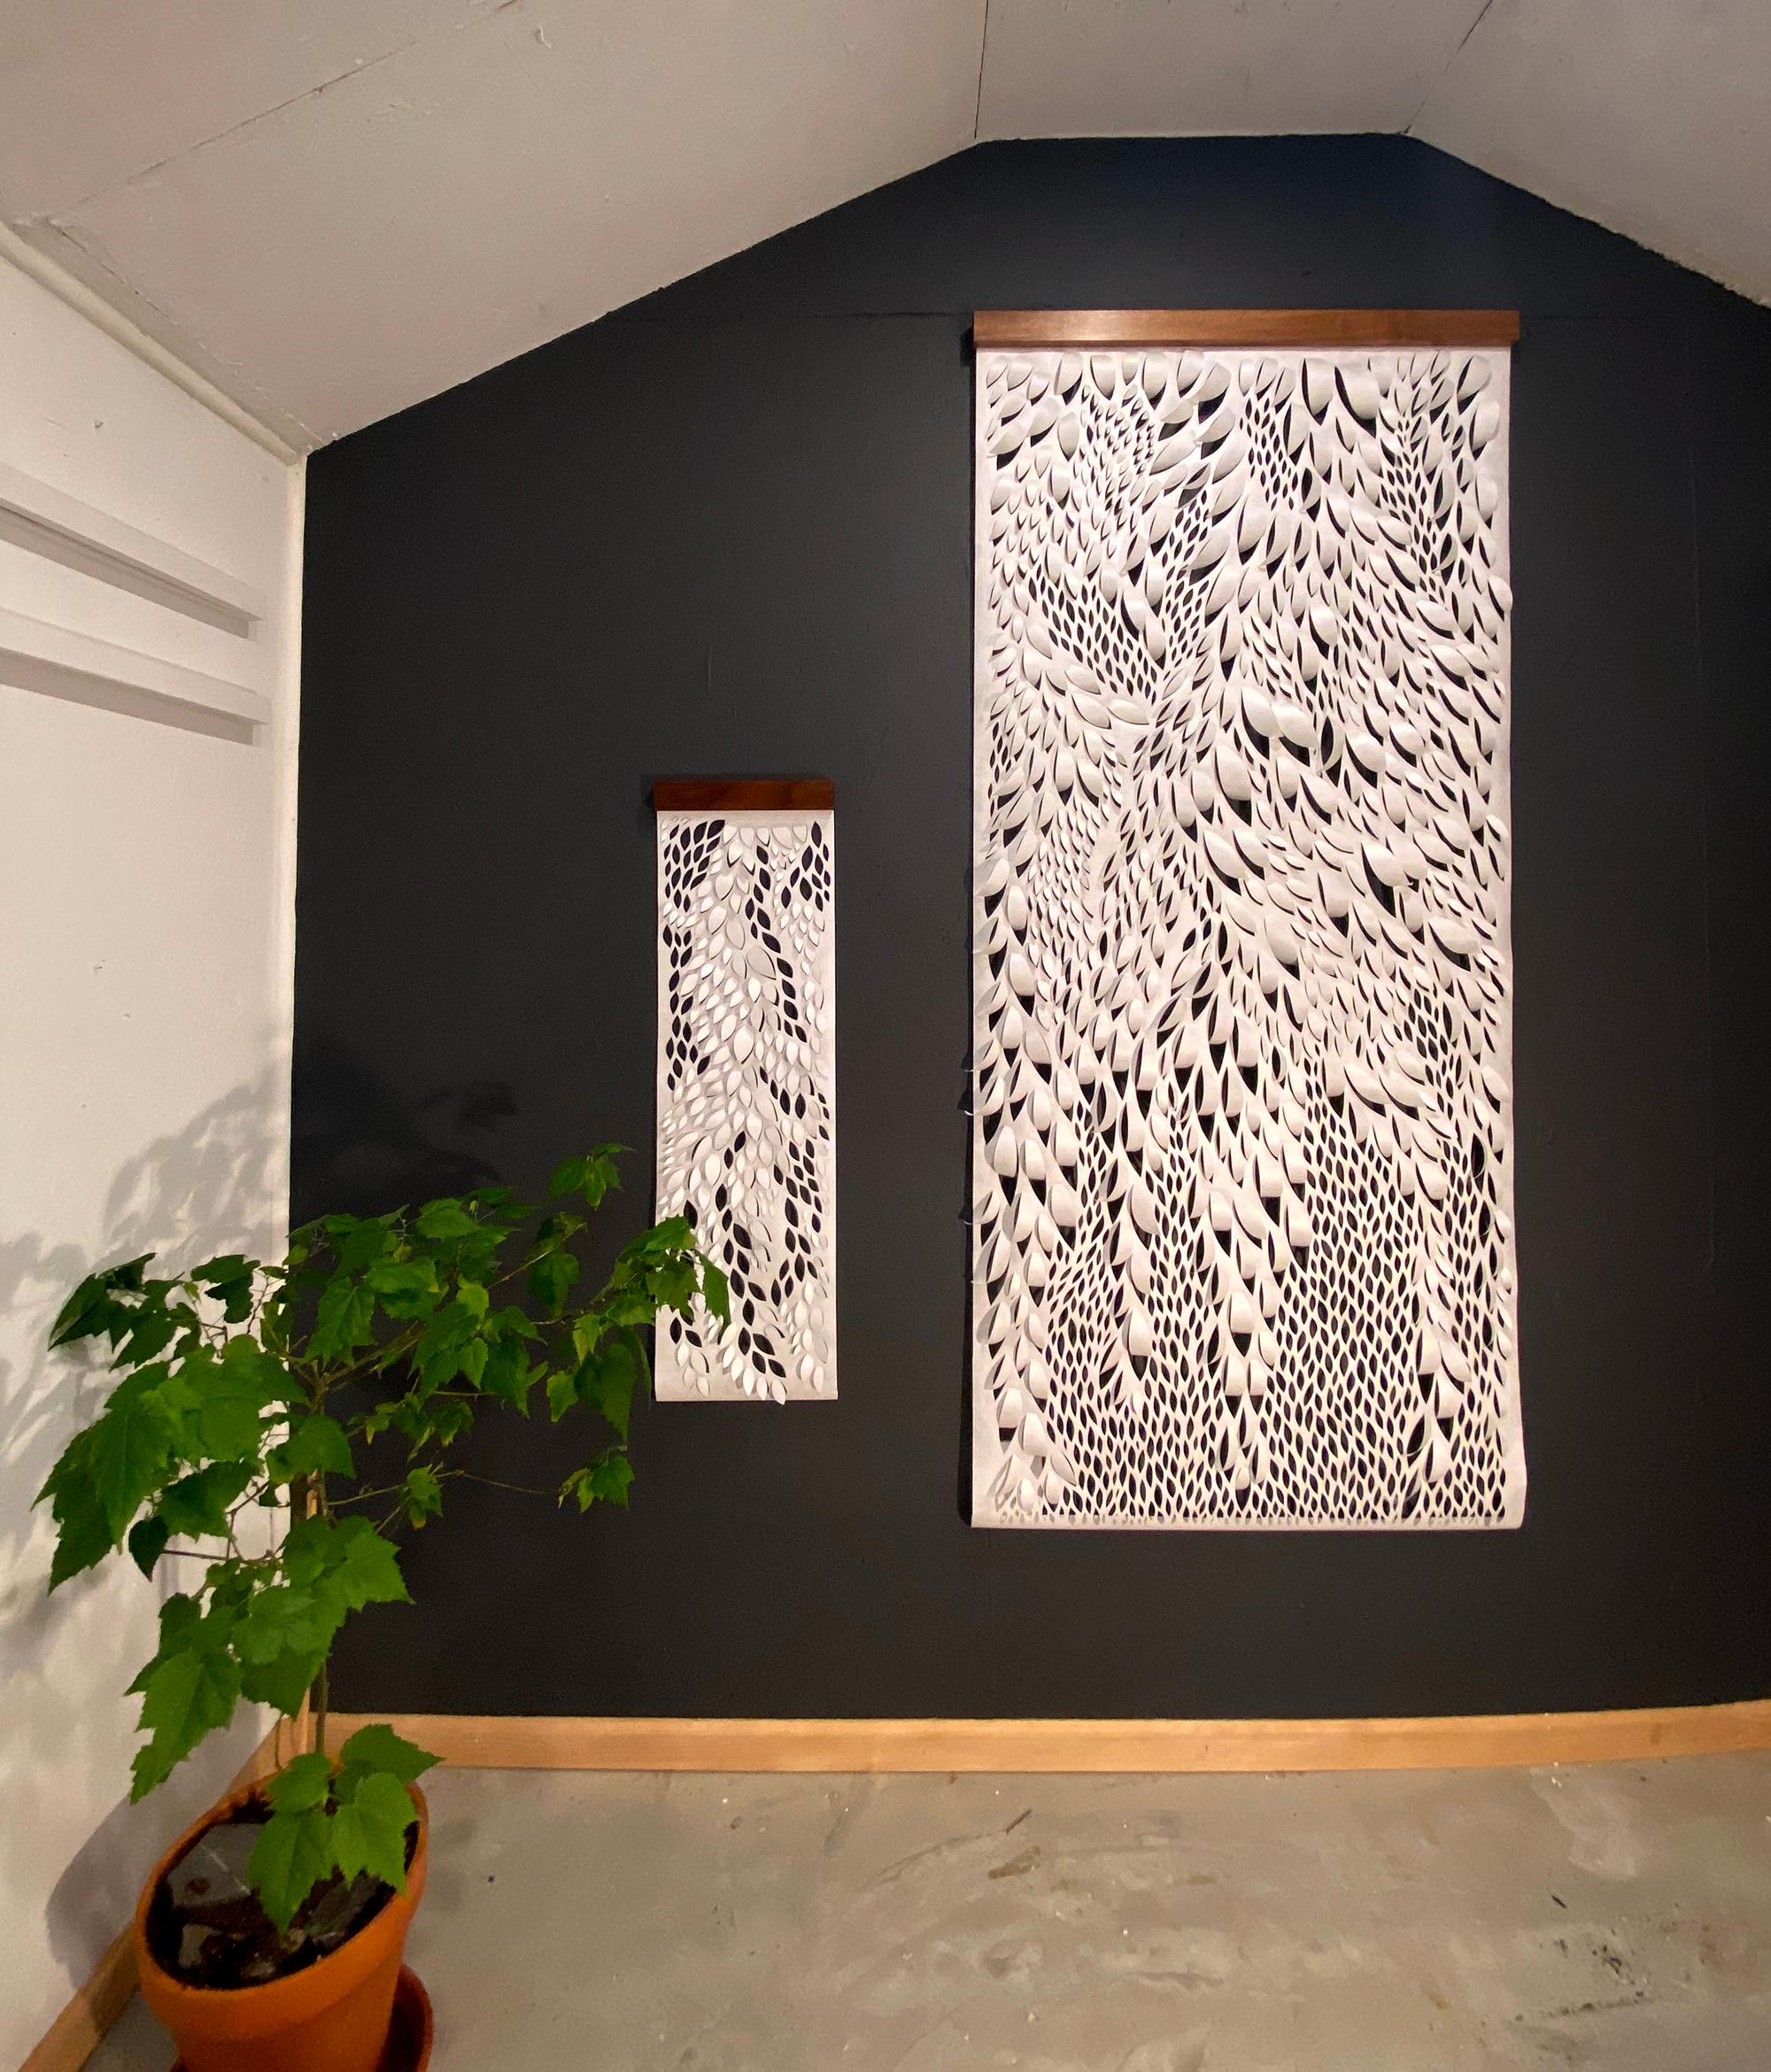 Ferns Through Basalt, Hand-cut Paper Scroll, White Tyvek Wall Hangings, 80"x36" - Mixed Media Art by Summer J. Hart